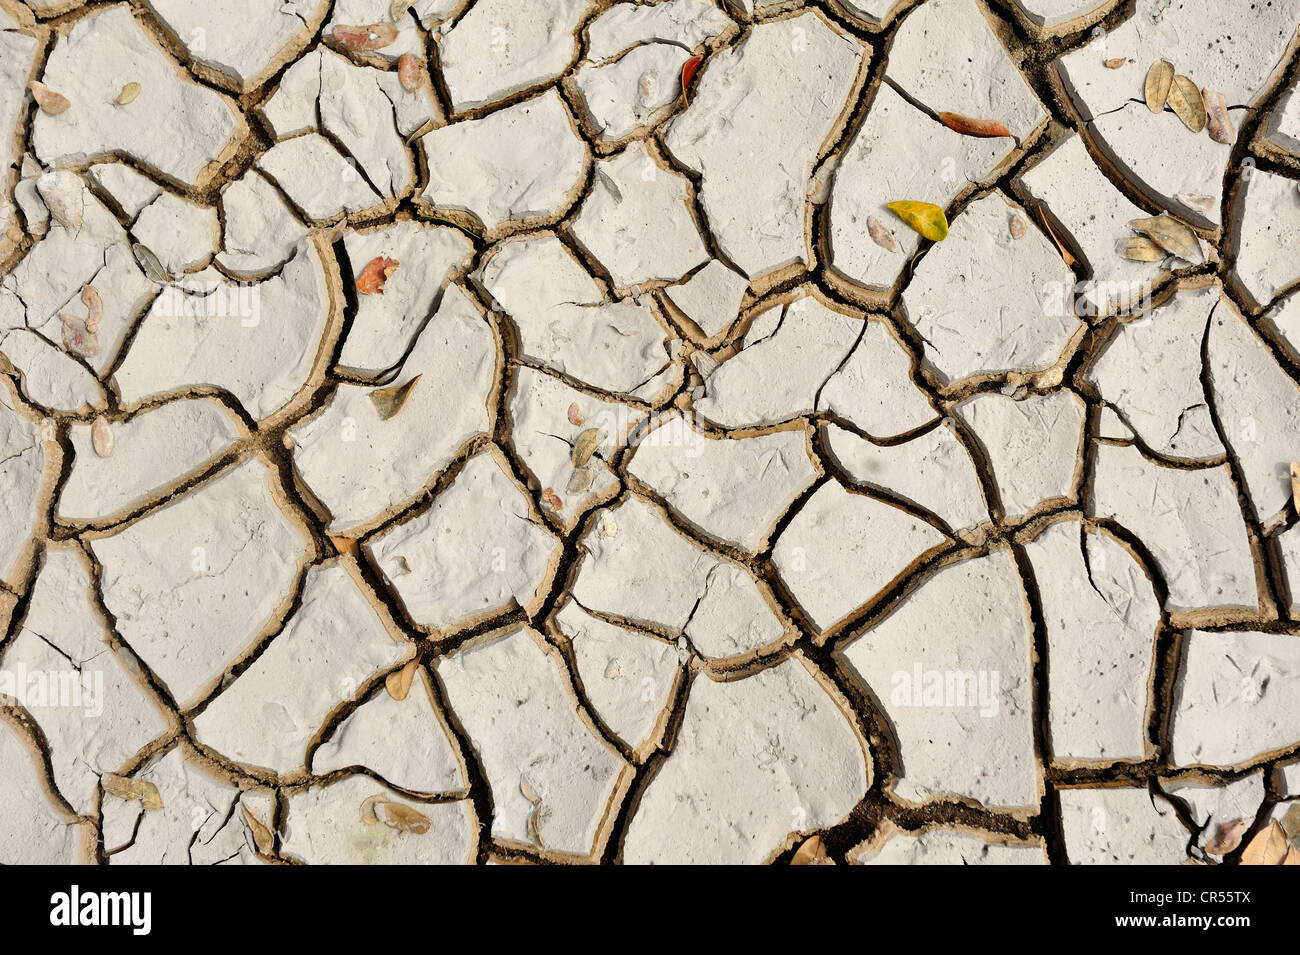 Secco, incrinato fango, immagine simbolica per il cambiamento climatico Foto Stock